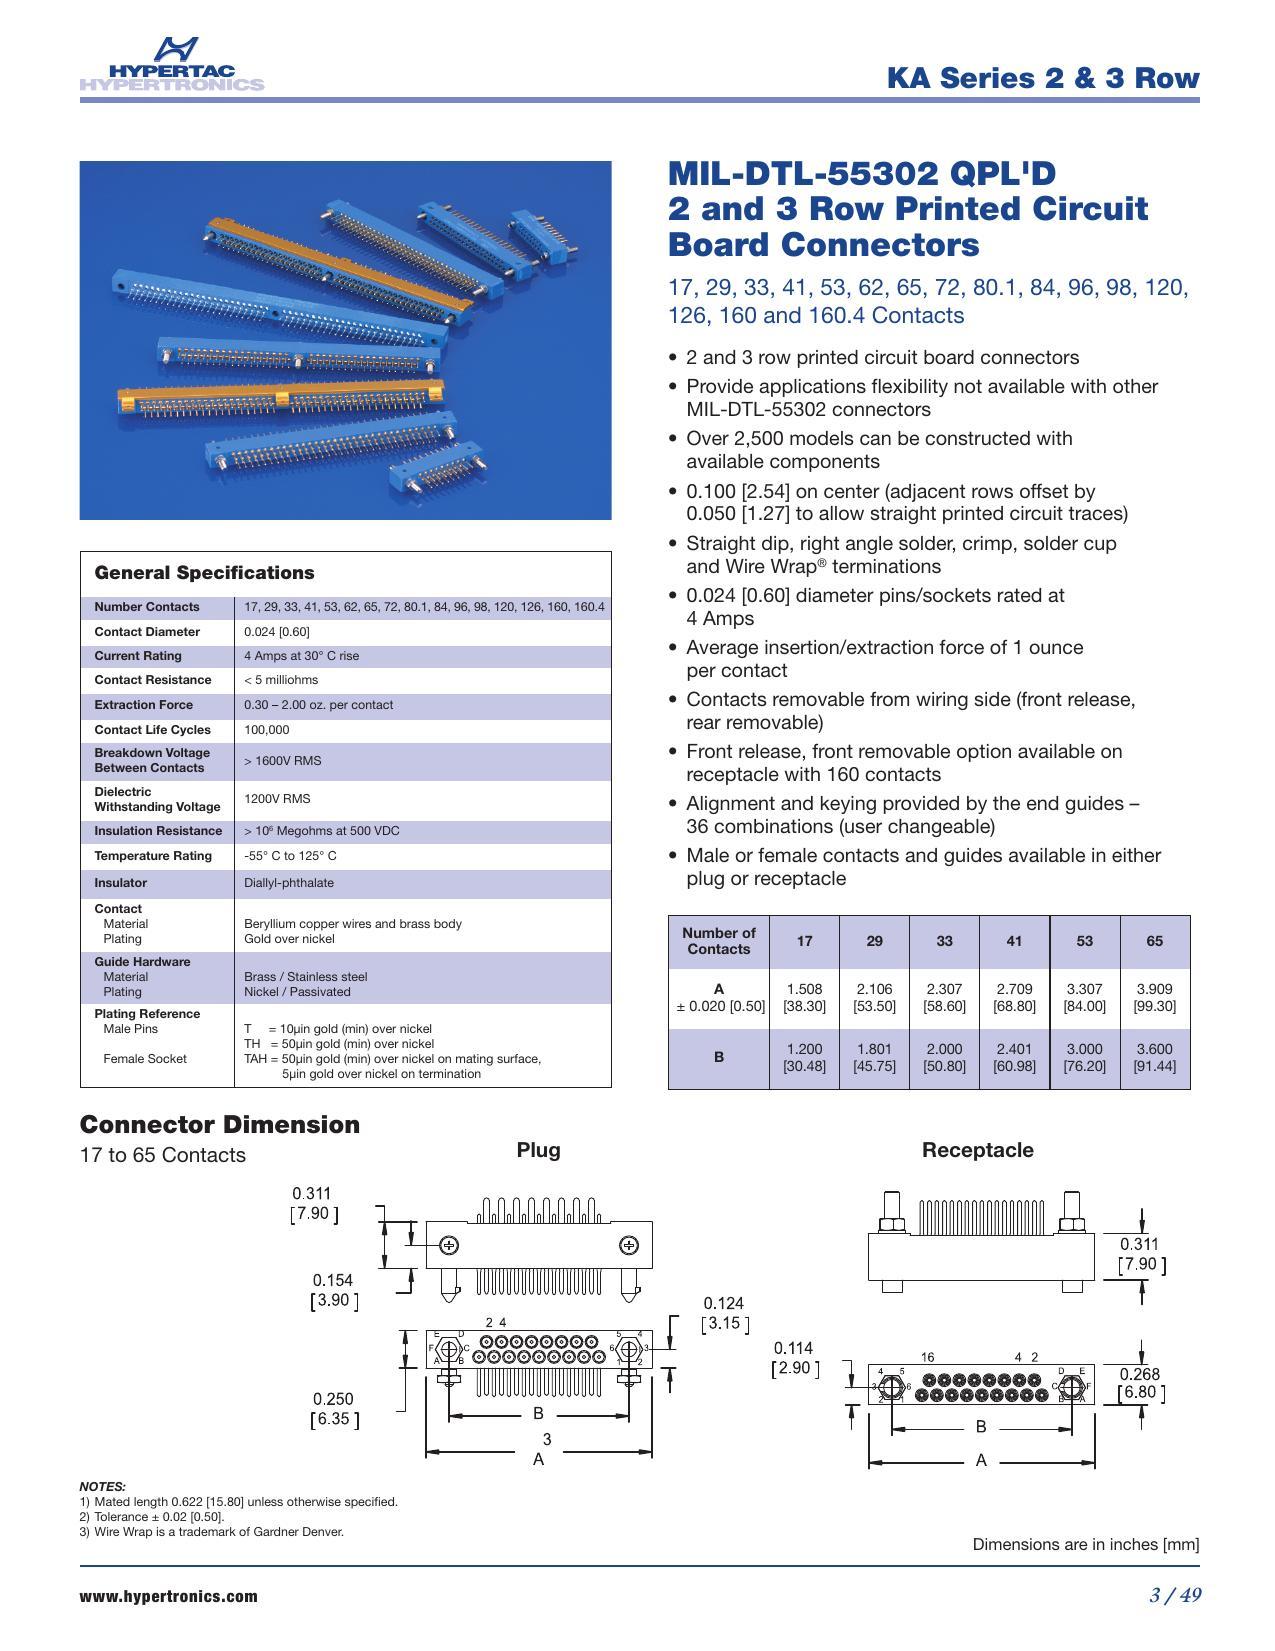 hyper-hypertaccs-ka-series-2-3-row-mil-dtl-55302-qpld-connectors.pdf